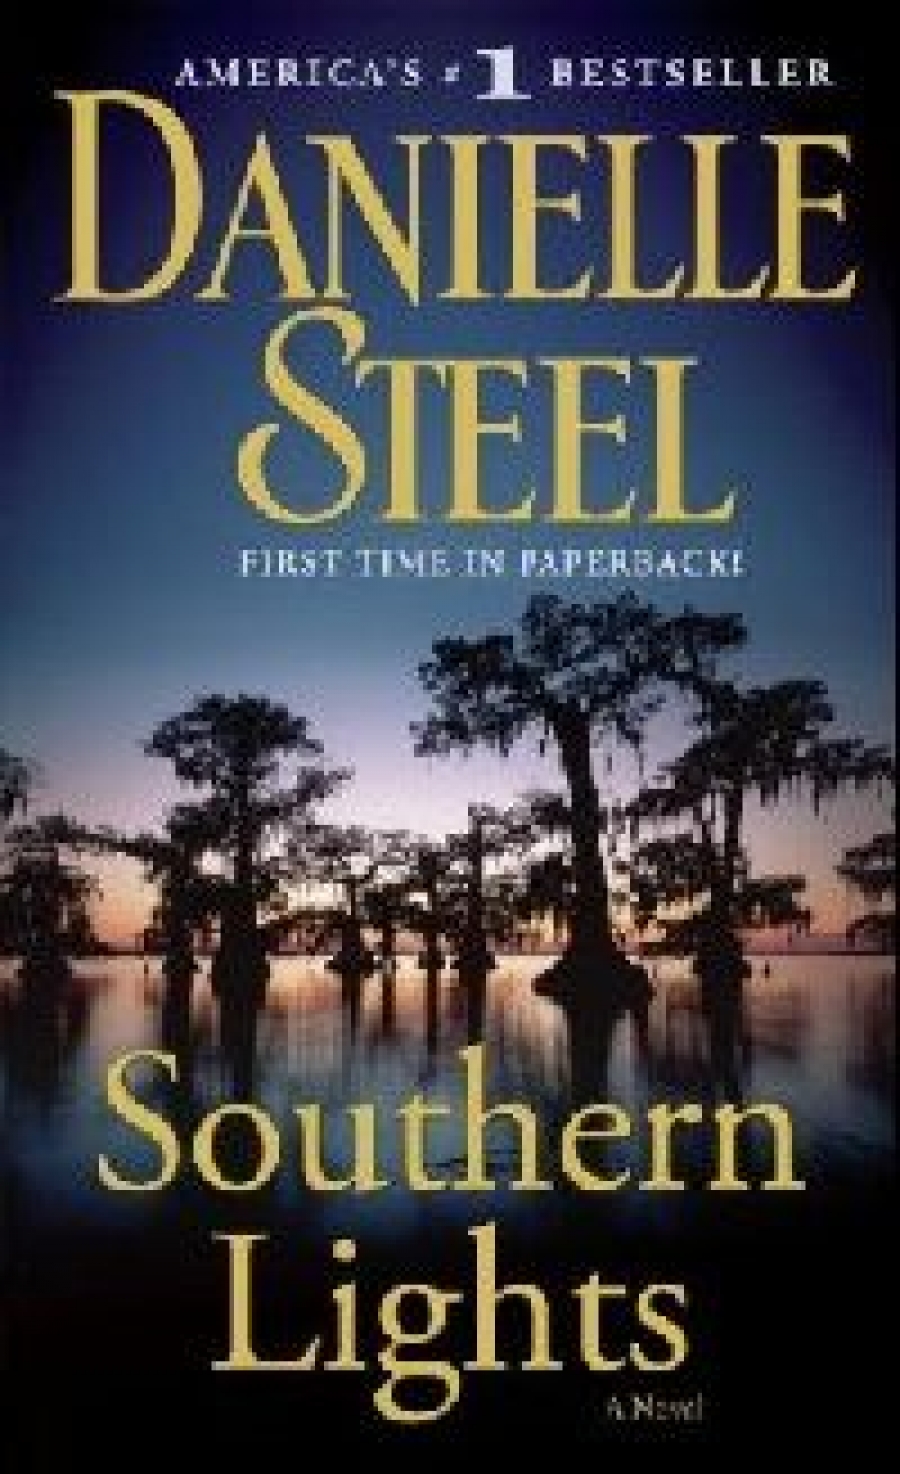 Steel Danielle ( ) Southern Lights ( ) 